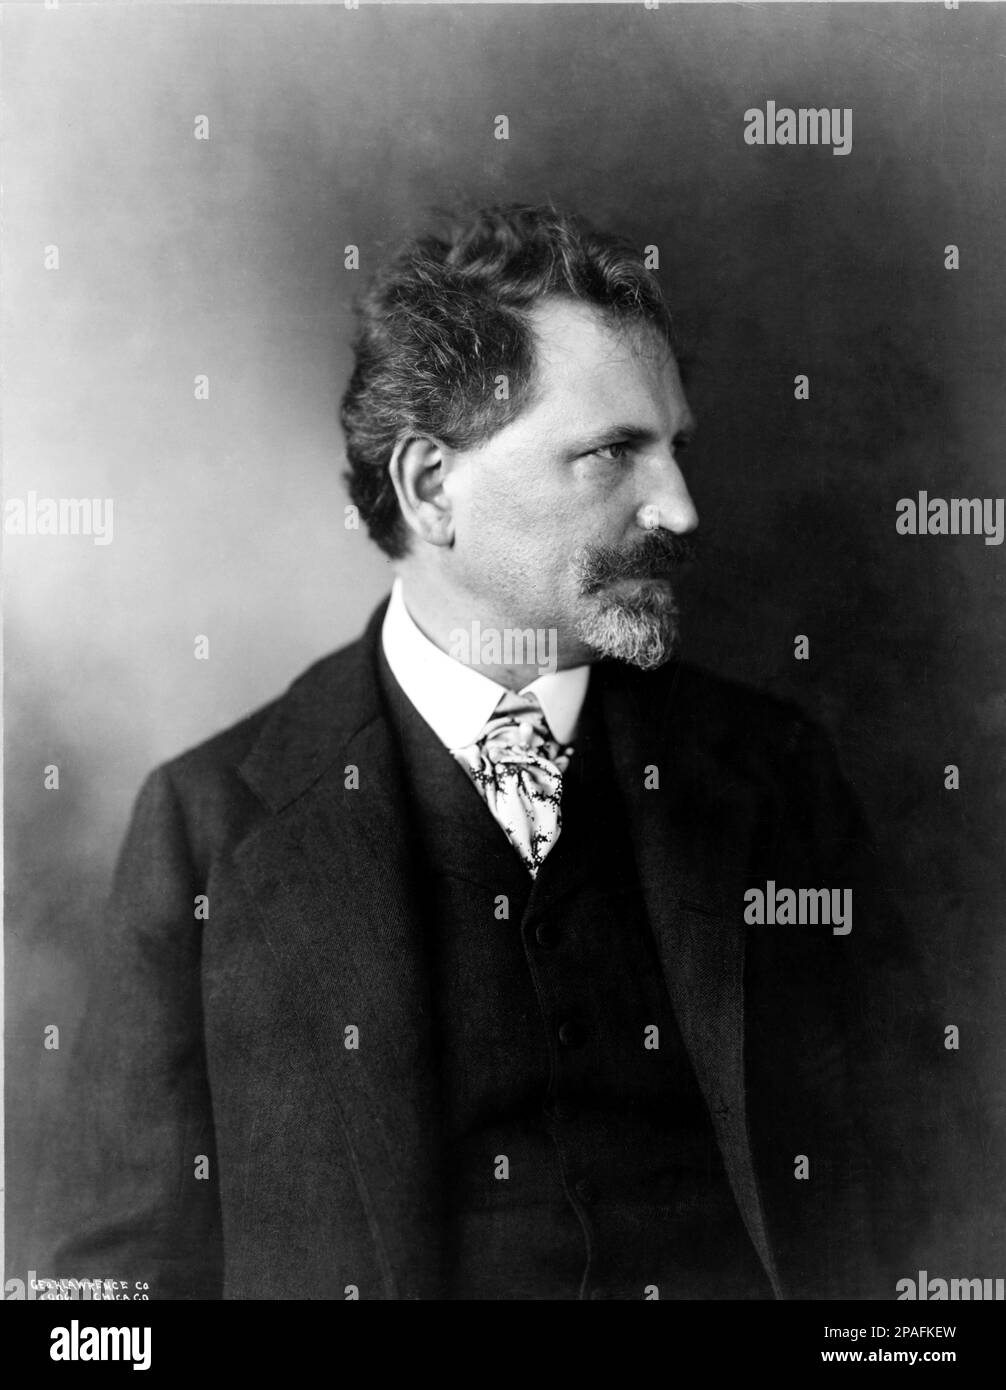 1906 : il pittore francese-moravo e l'illustratore ART NOUVEAU ALFONS MUCHA ( 1860 - 1939 ) . Foto di George K. Lawrence Co, Chicago , USA - ART - ARTE - PITTURA - pittura - PITTORE - artista - artista - artista - ritratto - ritratto - baffi - baffi - barba - barba - barba - colletto - colletto - cravatta - BELLE EPOQUE - occhiali da vista - lente - Alphonse - PROFILO ---- ARCHIVIO GBB Foto Stock